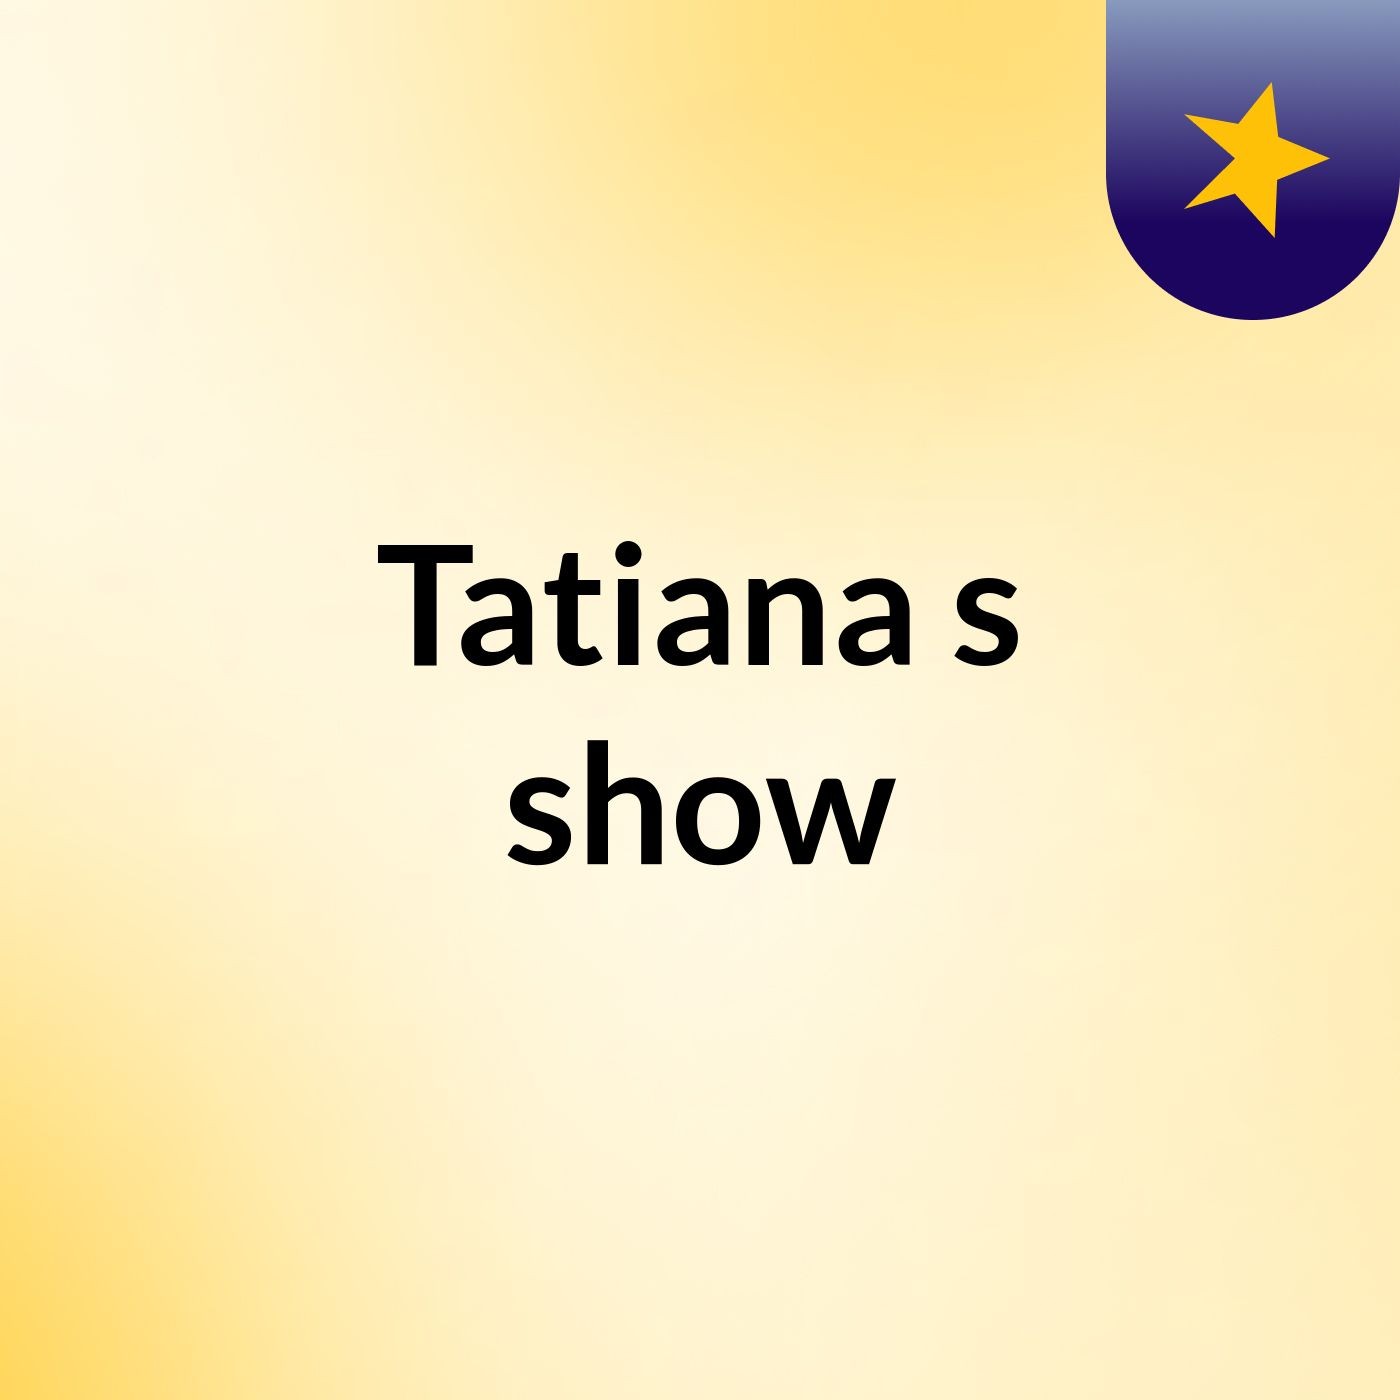 Tatiana's show